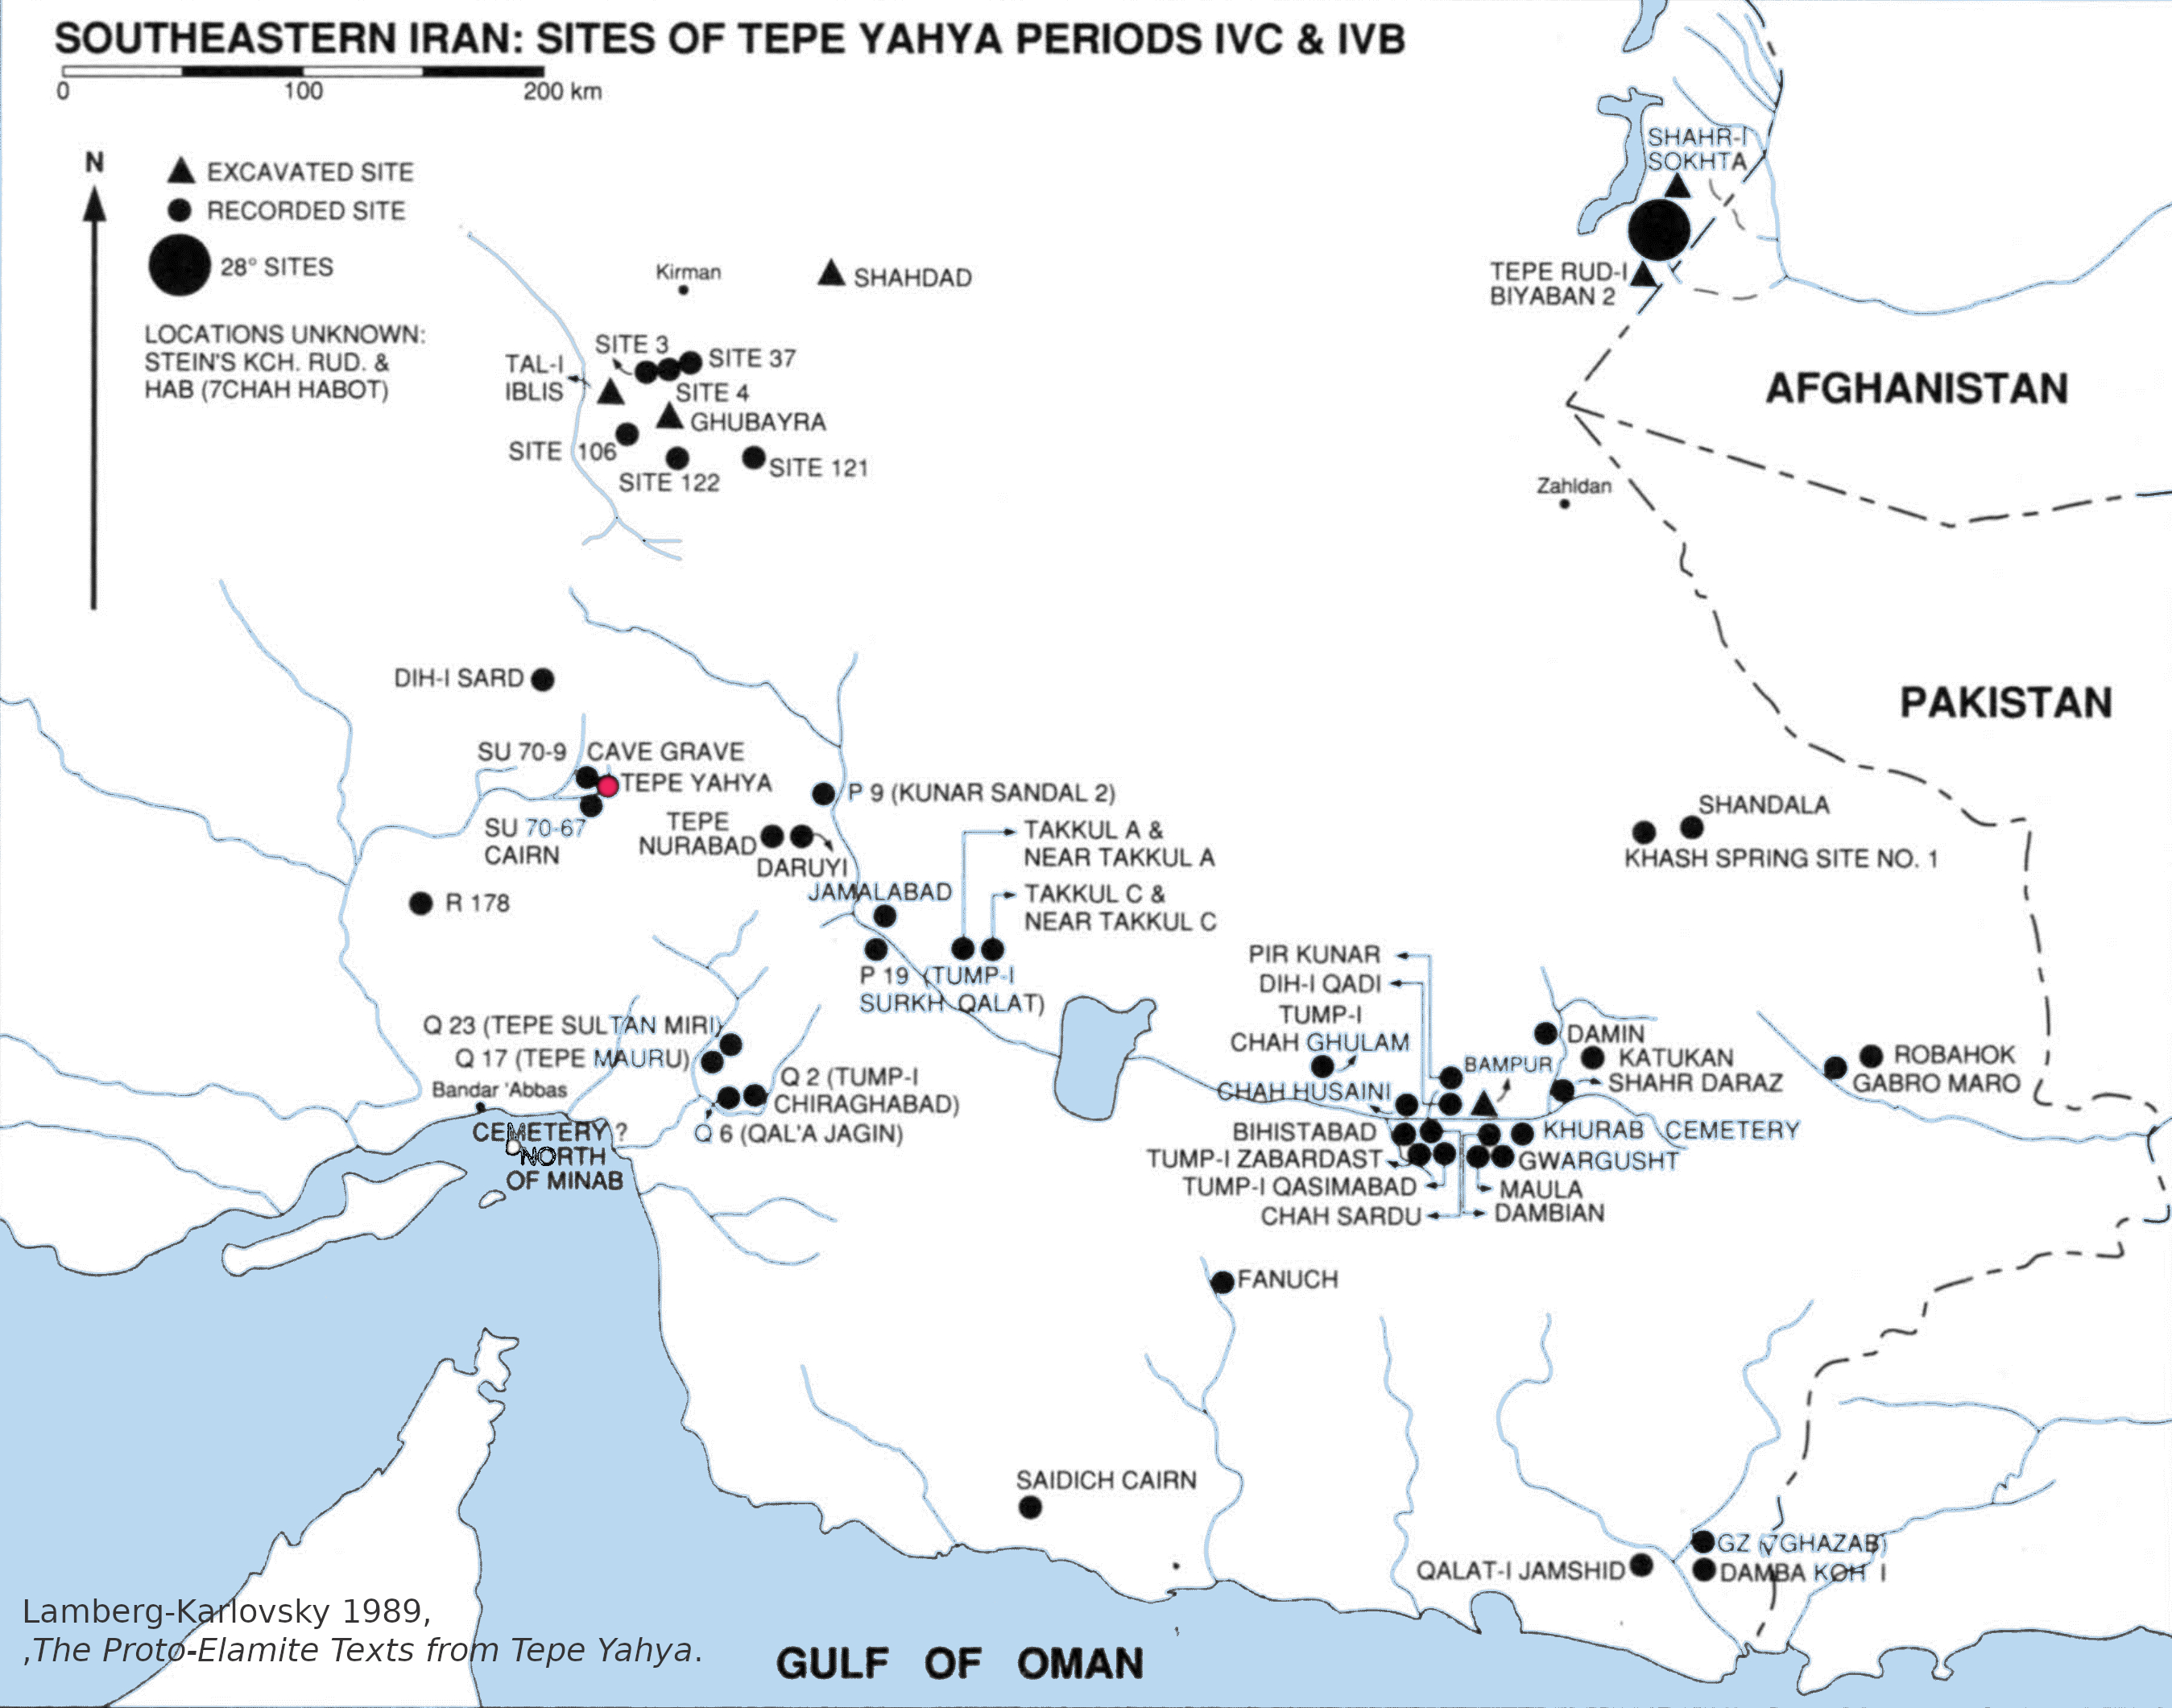 Sites du sud de l'Iran des périodes IVC et IVB de Tepe Yahya, Karlovky 1989